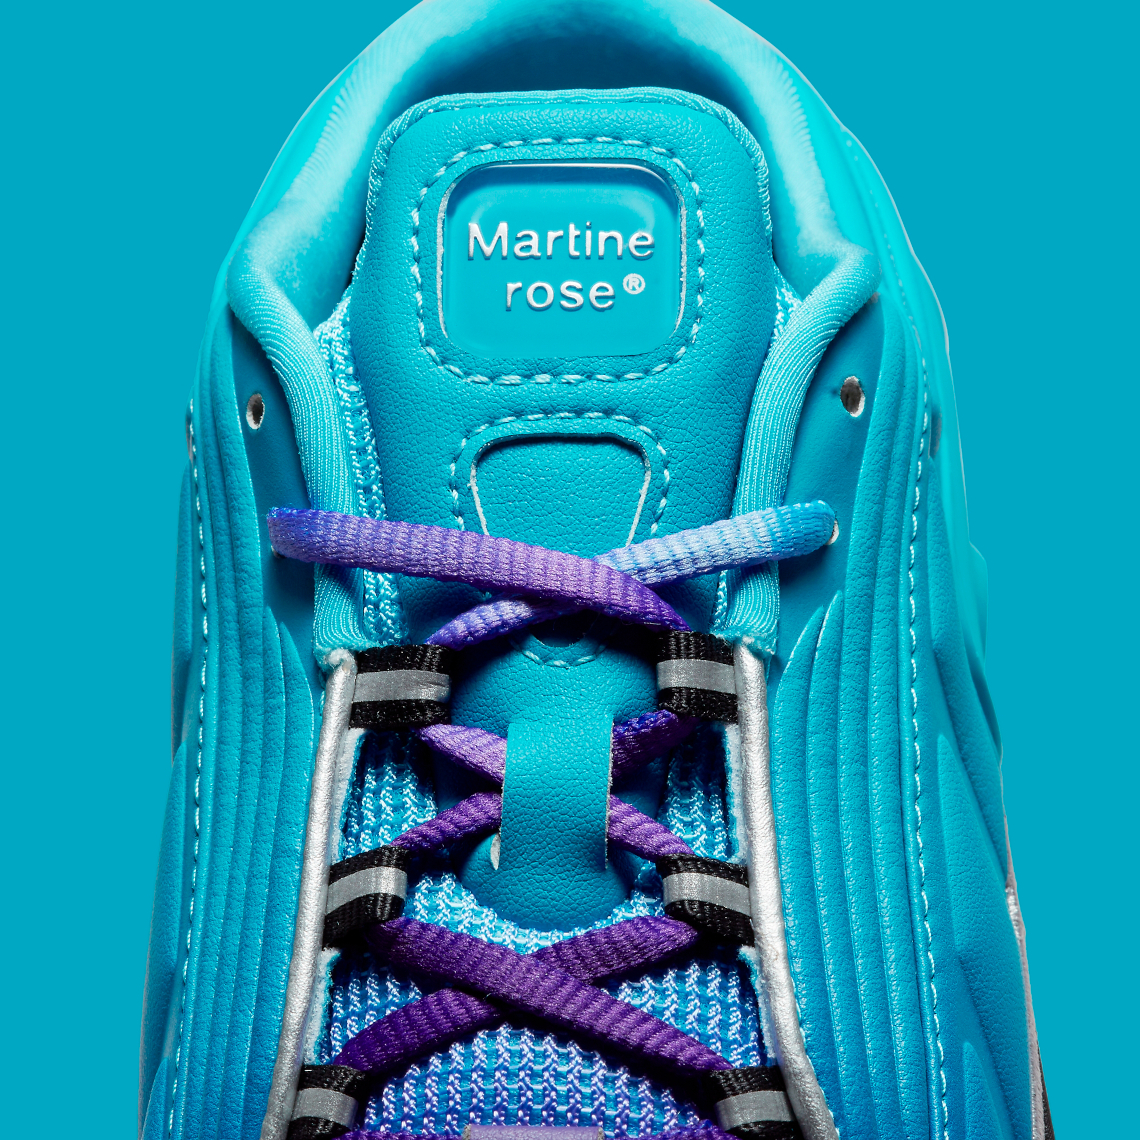 Martine Rose Nike purpke Shox Mule Mr 4 Scuba Blue Dq2401 400 7